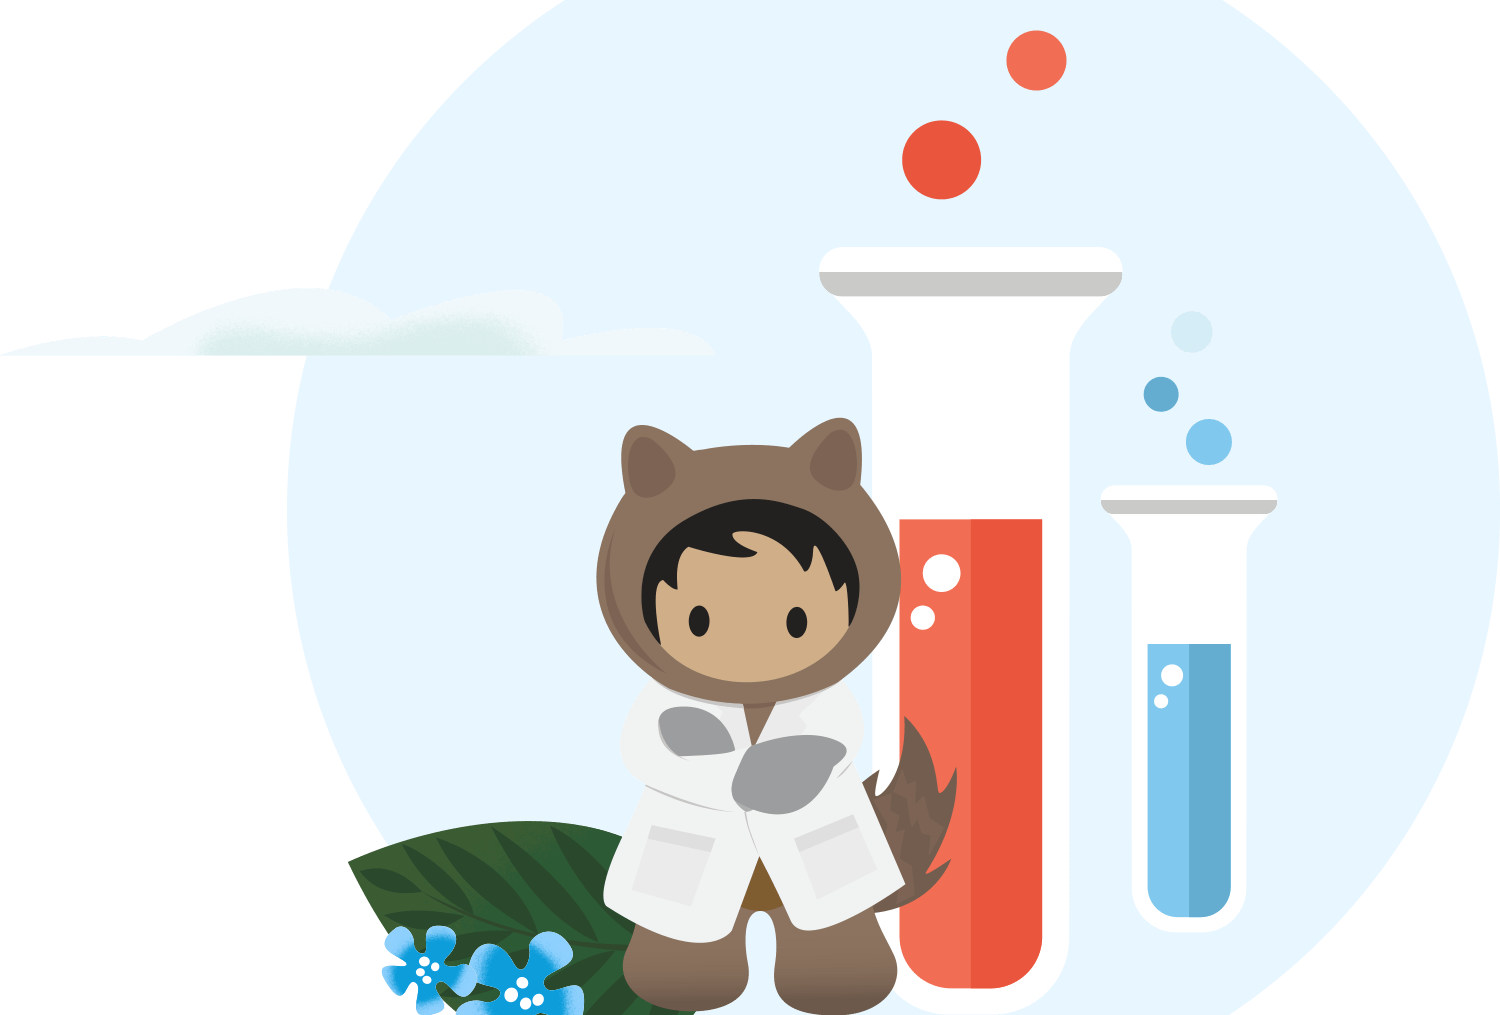 Astro in a lab coat